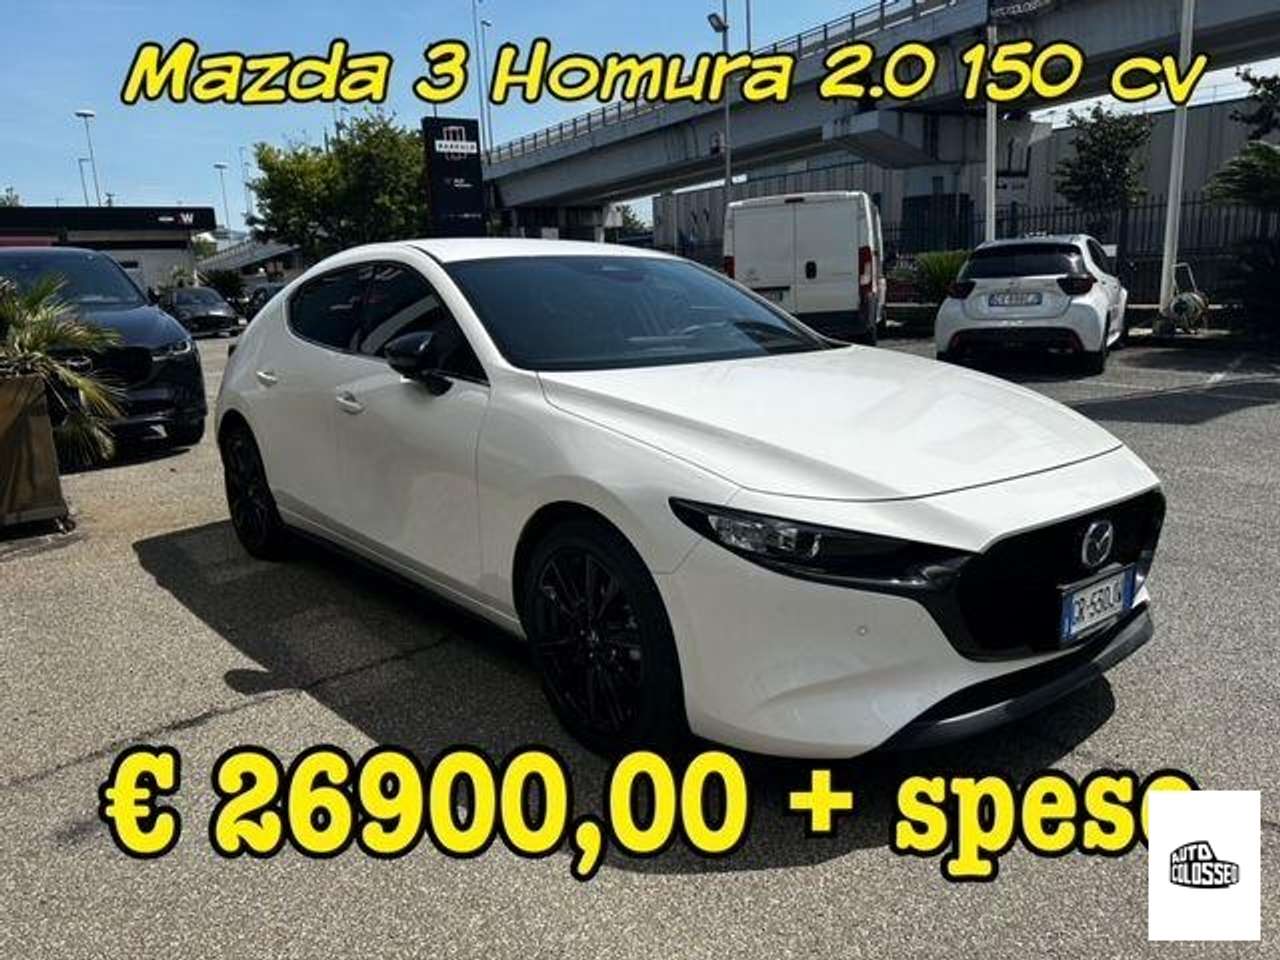 Mazda 3 HOMURA